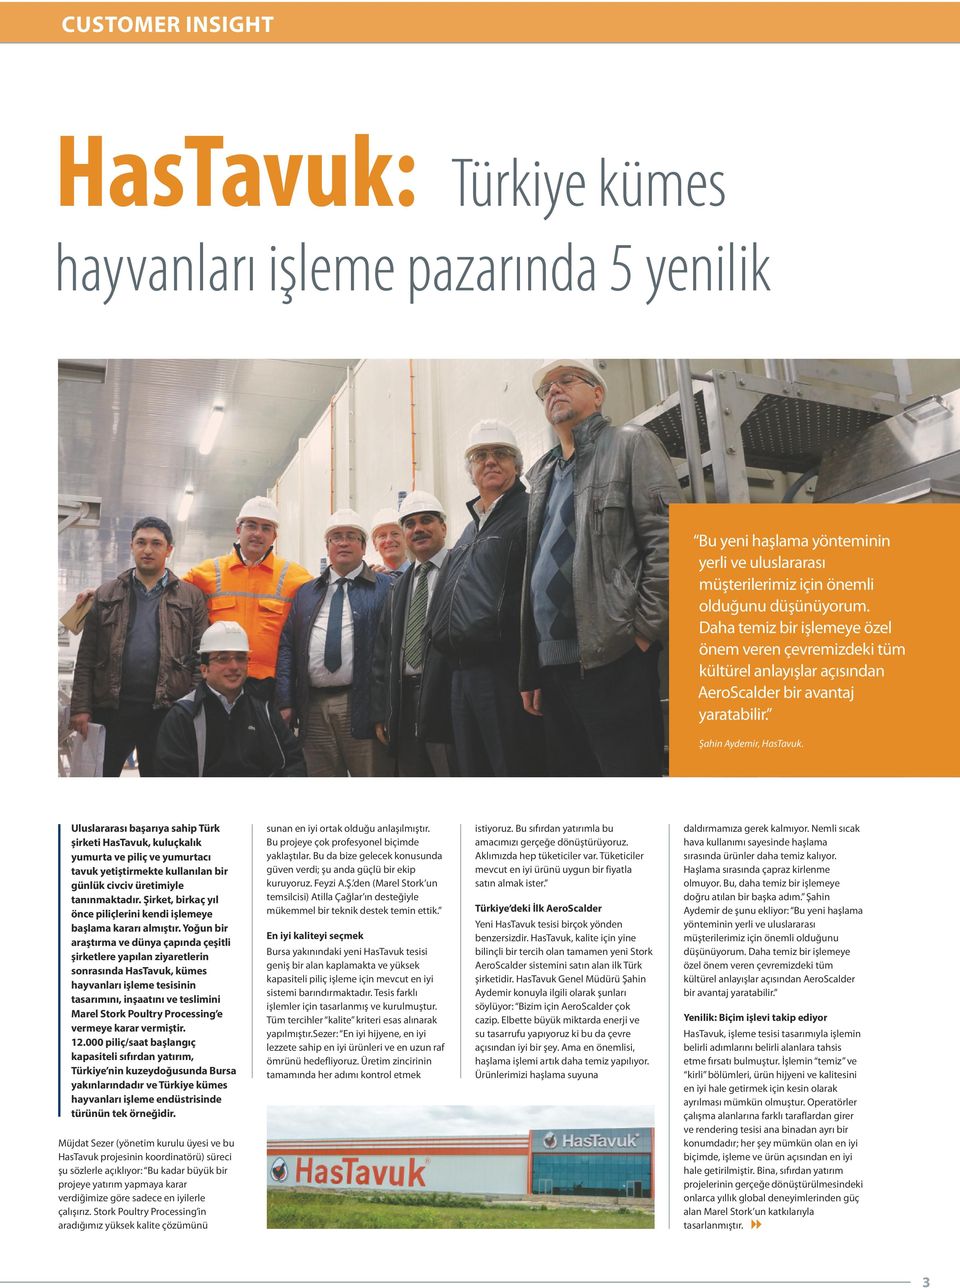 Uluslararası başarıya sahip Türk şirketi HasTavuk, kuluçkalık yumurta ve piliç ve yumurtacı tavuk yetiştirmekte kullanılan bir günlük civciv üretimiyle tanınmaktadır.